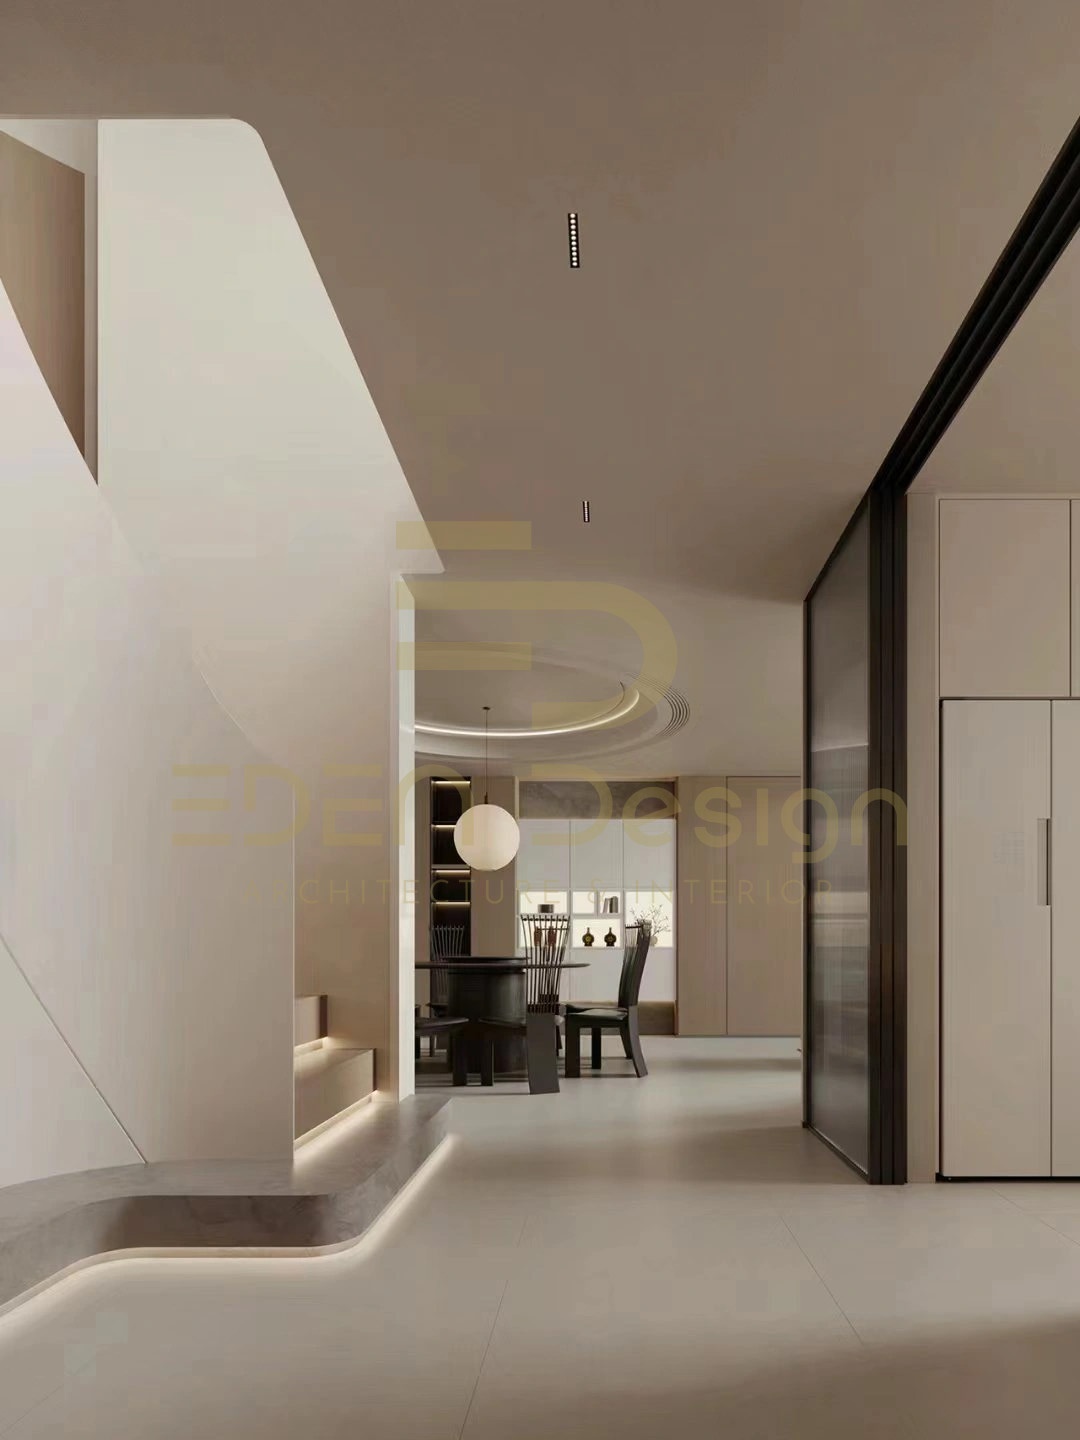 Màu trắng kem của tường, sàn và trần làm nổi bật các chi tiết nội thất trong nhà